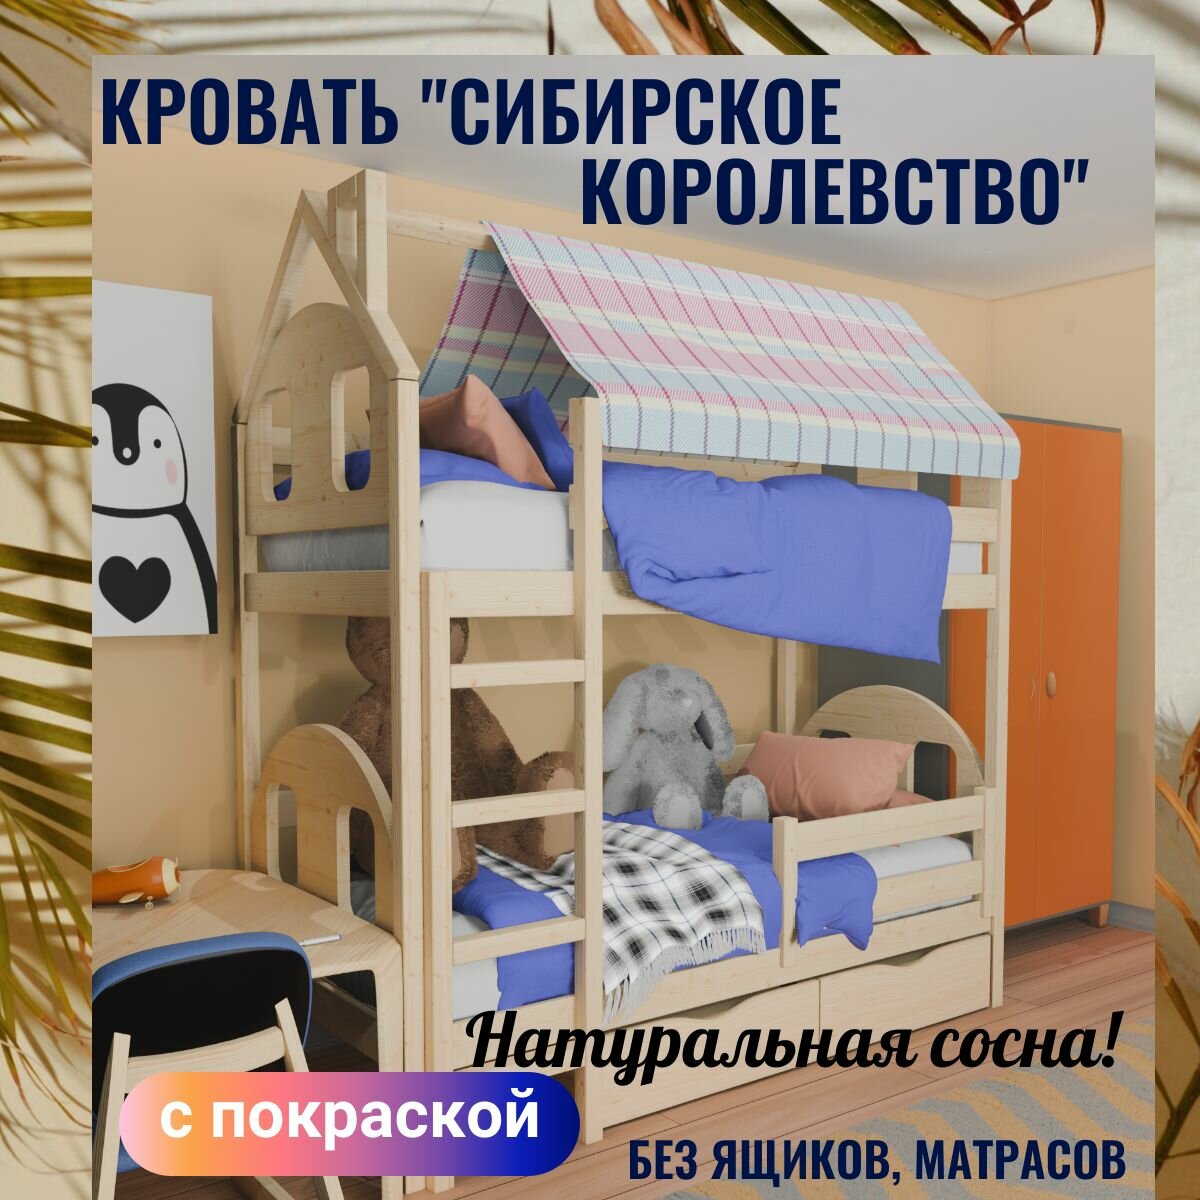 Двухъярусная кровать из дерева ( двухэтажная кровать из сосны) "Сибирское королевство" c покраской 200x90 см борт 45 см